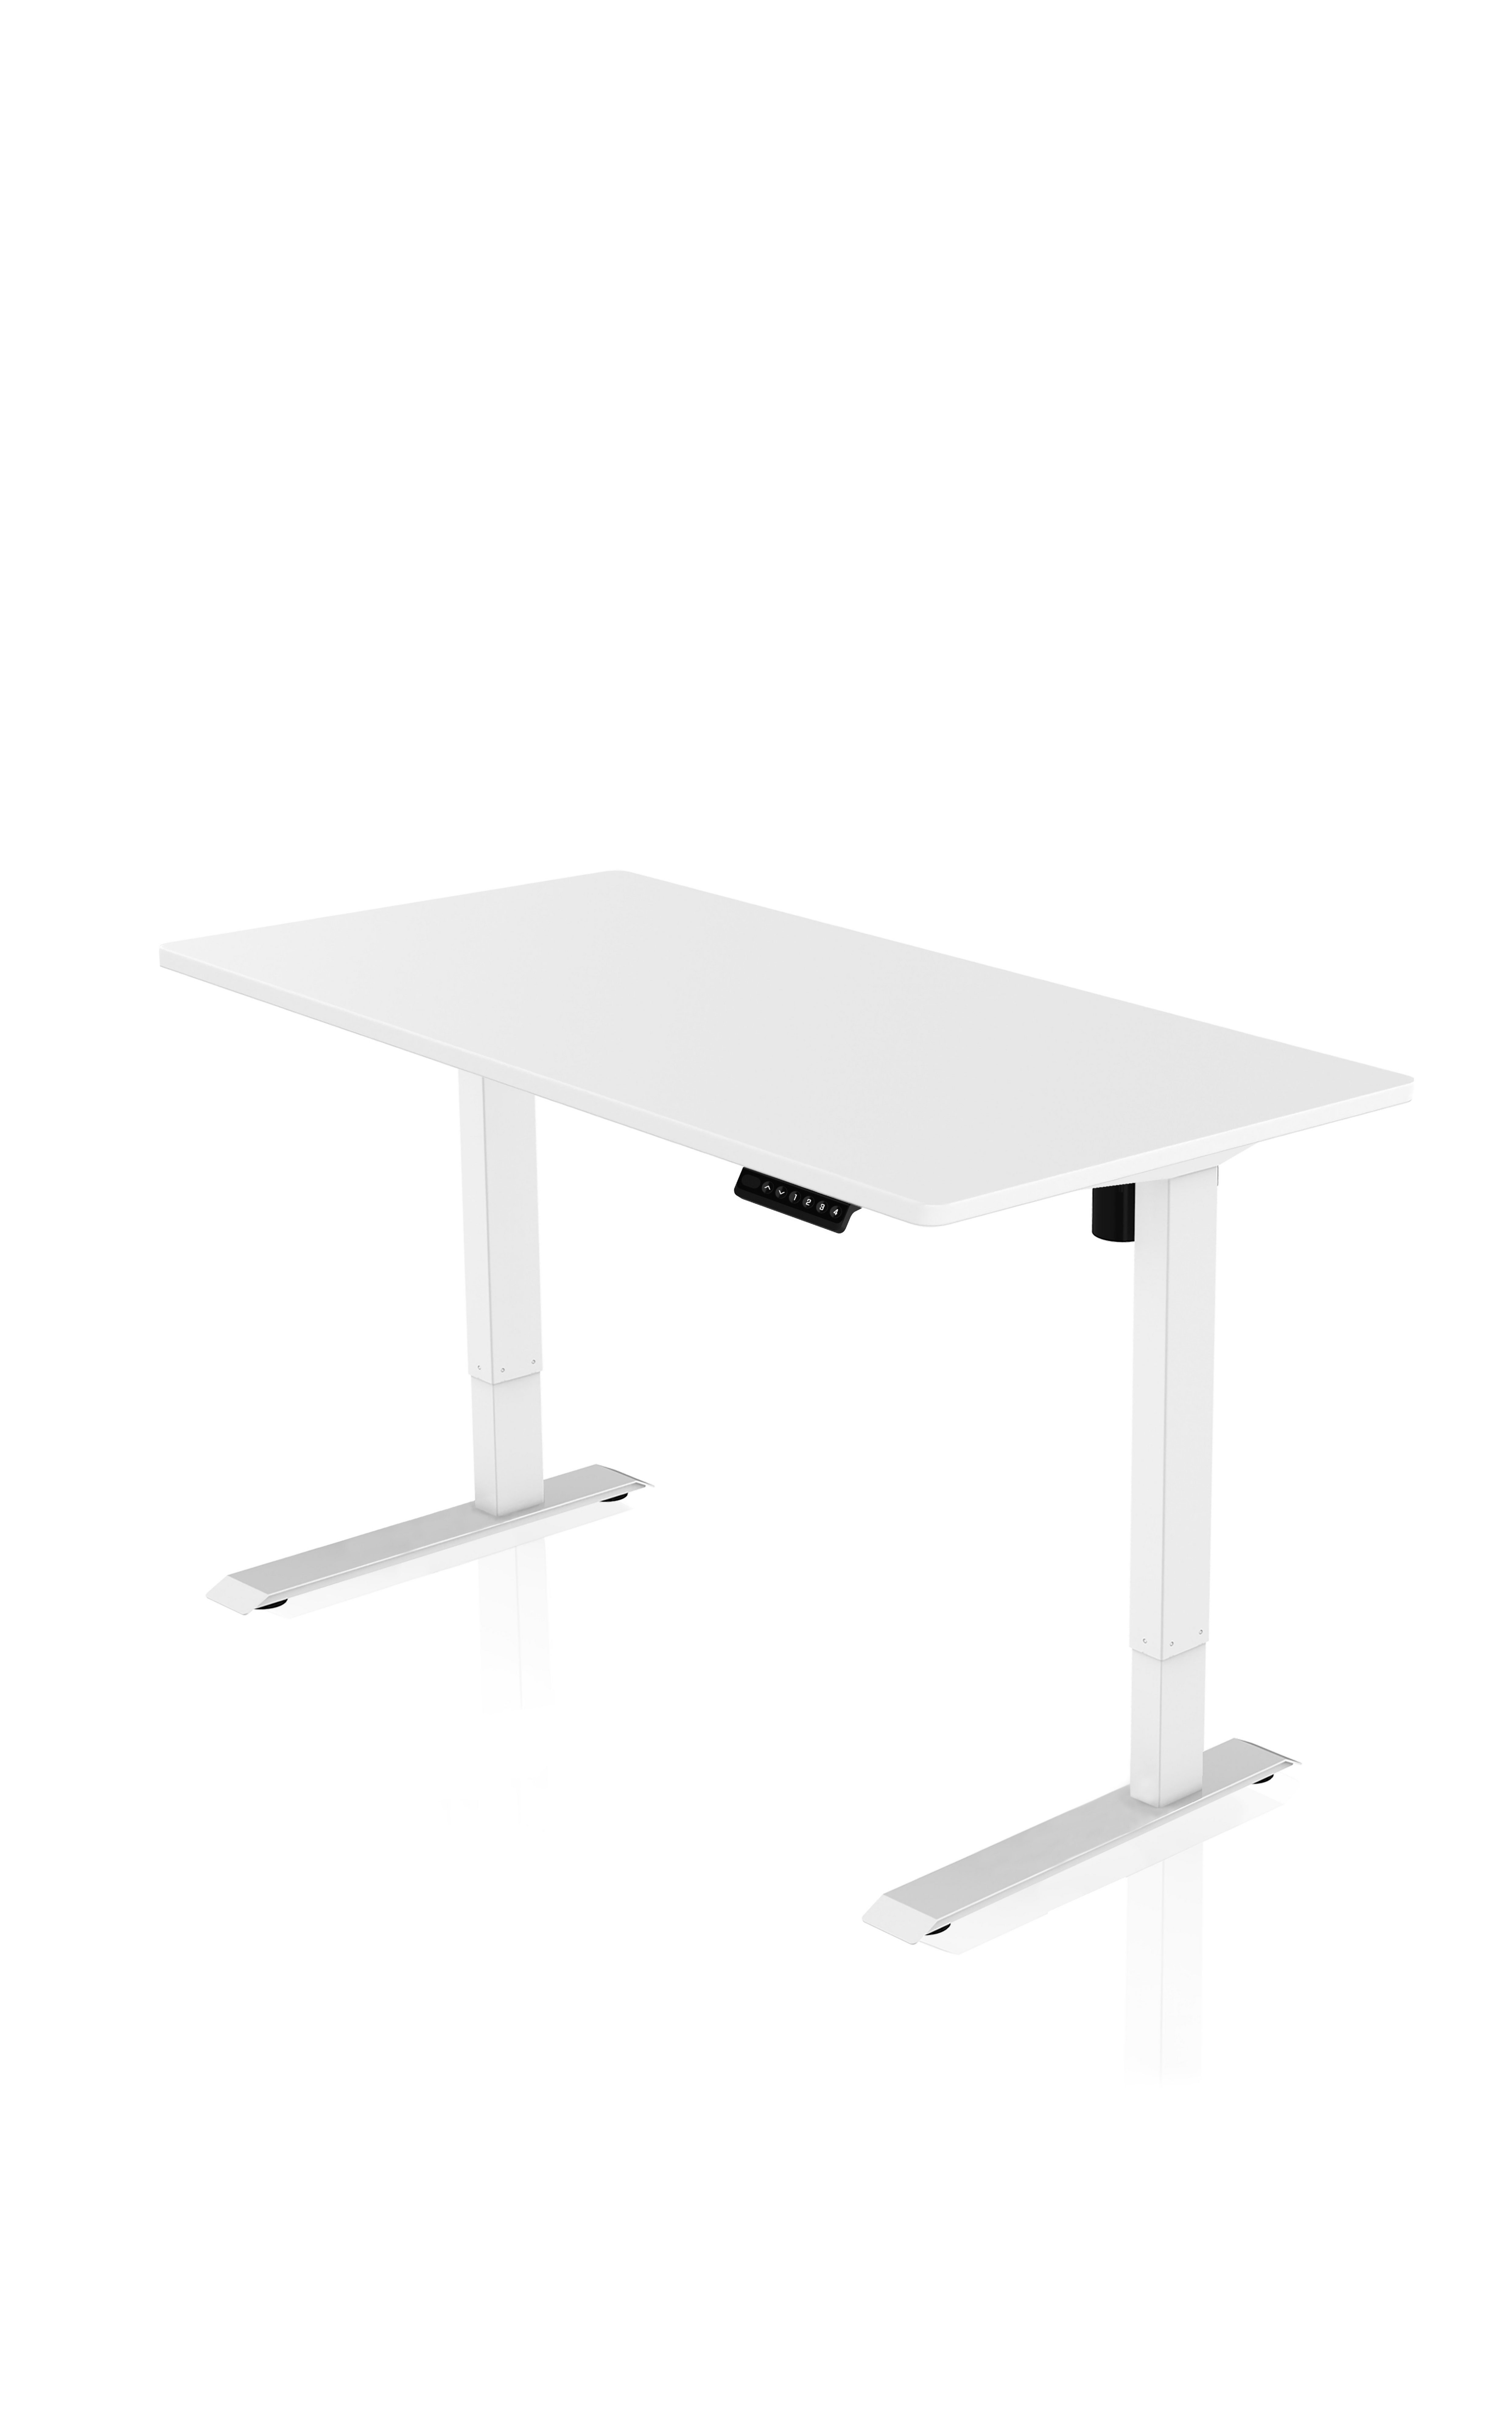 AGIl Schreibtisch elektrisch höhenverstellbarer Schreibtisch - 120*60 cm Komplett-Set Weißes Gestell - Weiße Tischplatte